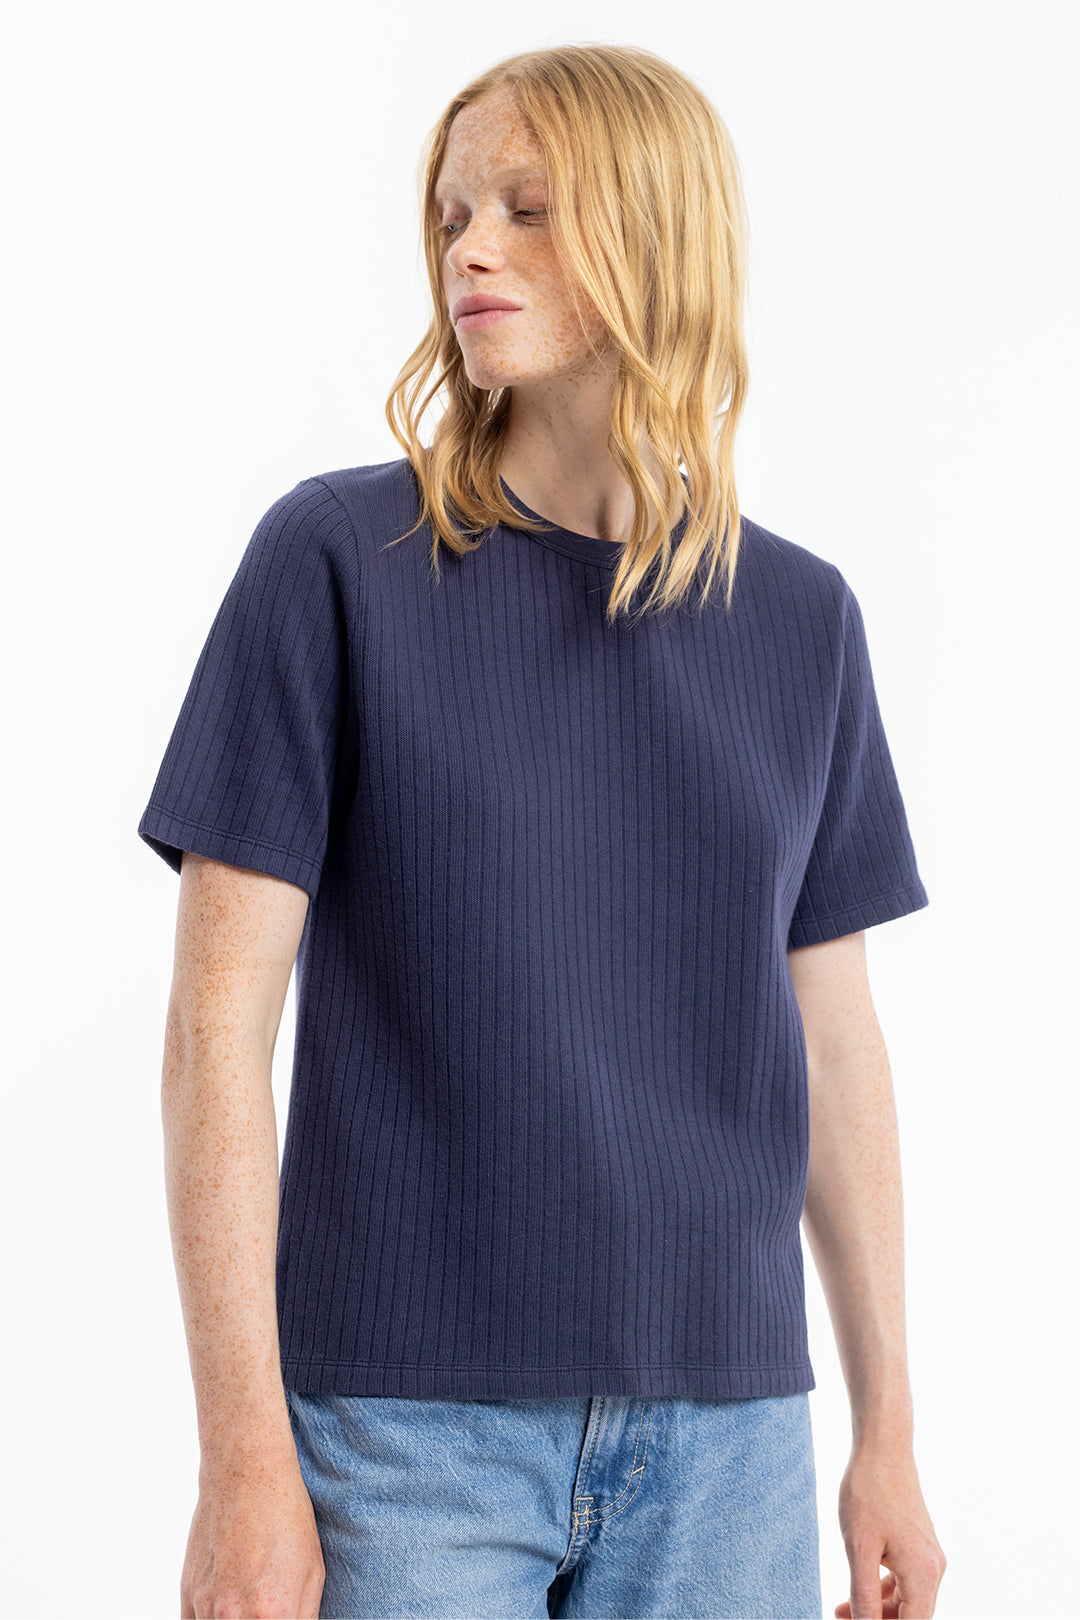 Dunkelblaues, geripptes T-Shirt aus 100% Bio-Baumwolle von Rotholz